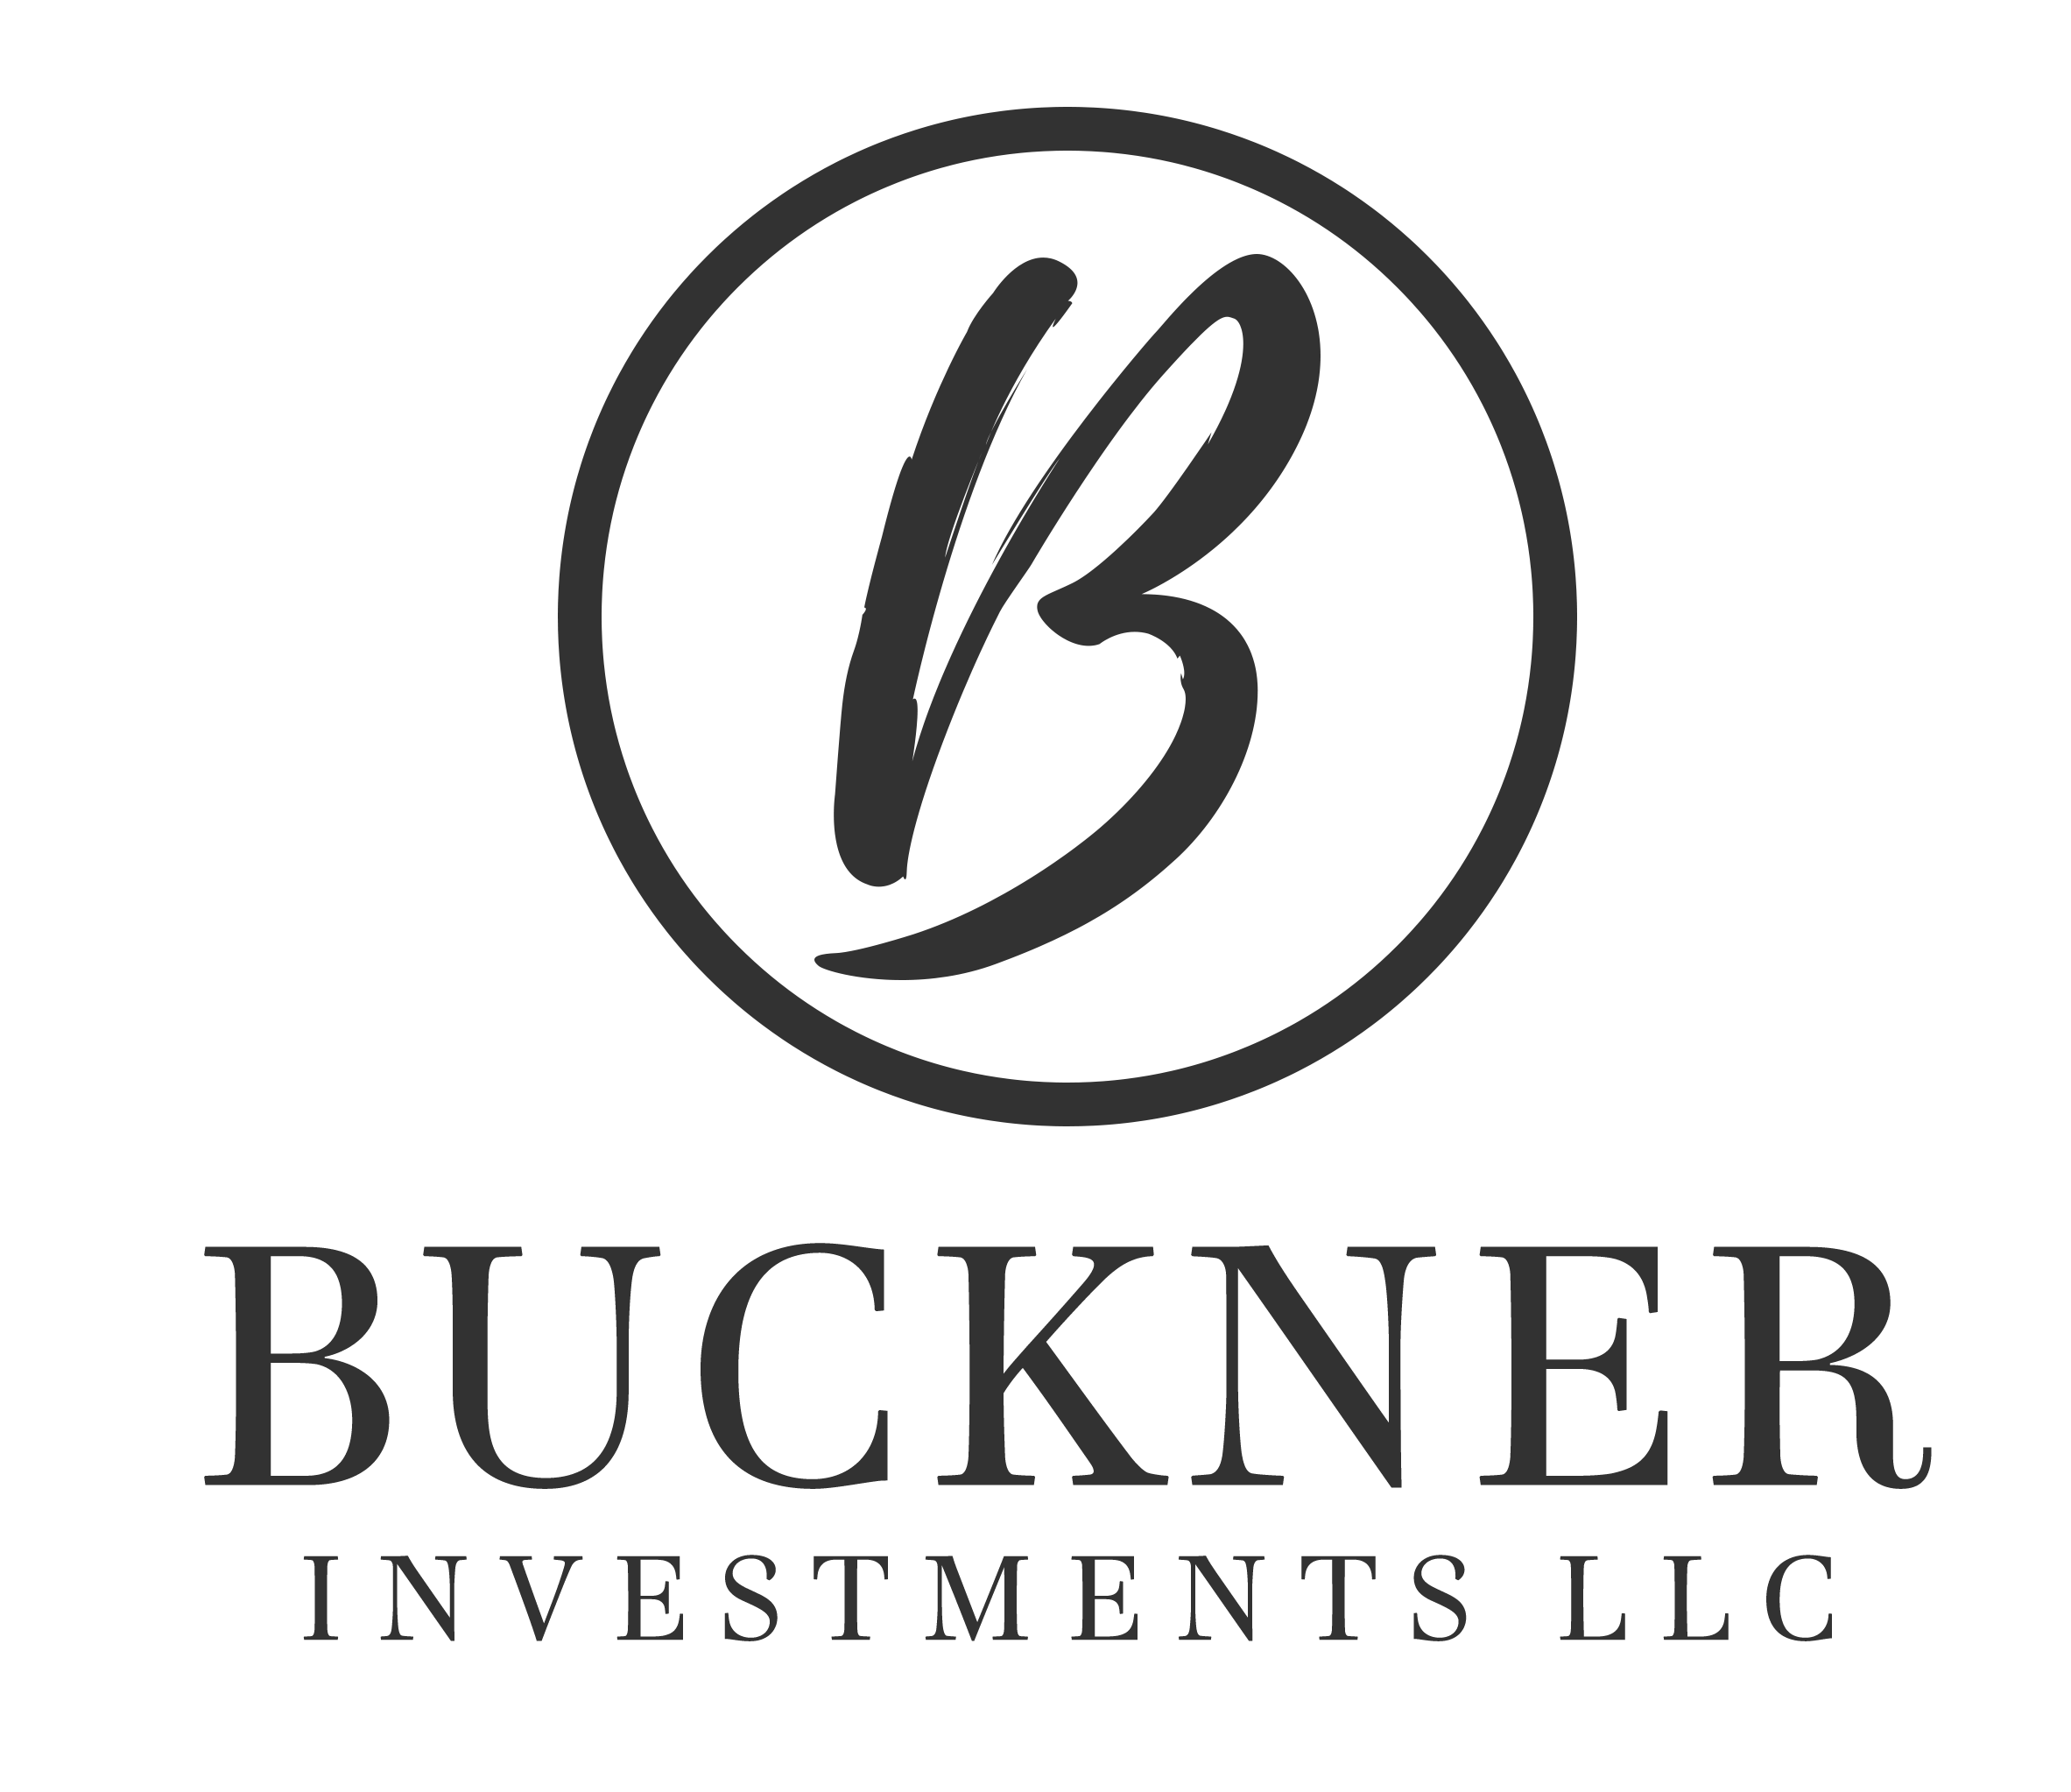 Buckner Investments logo